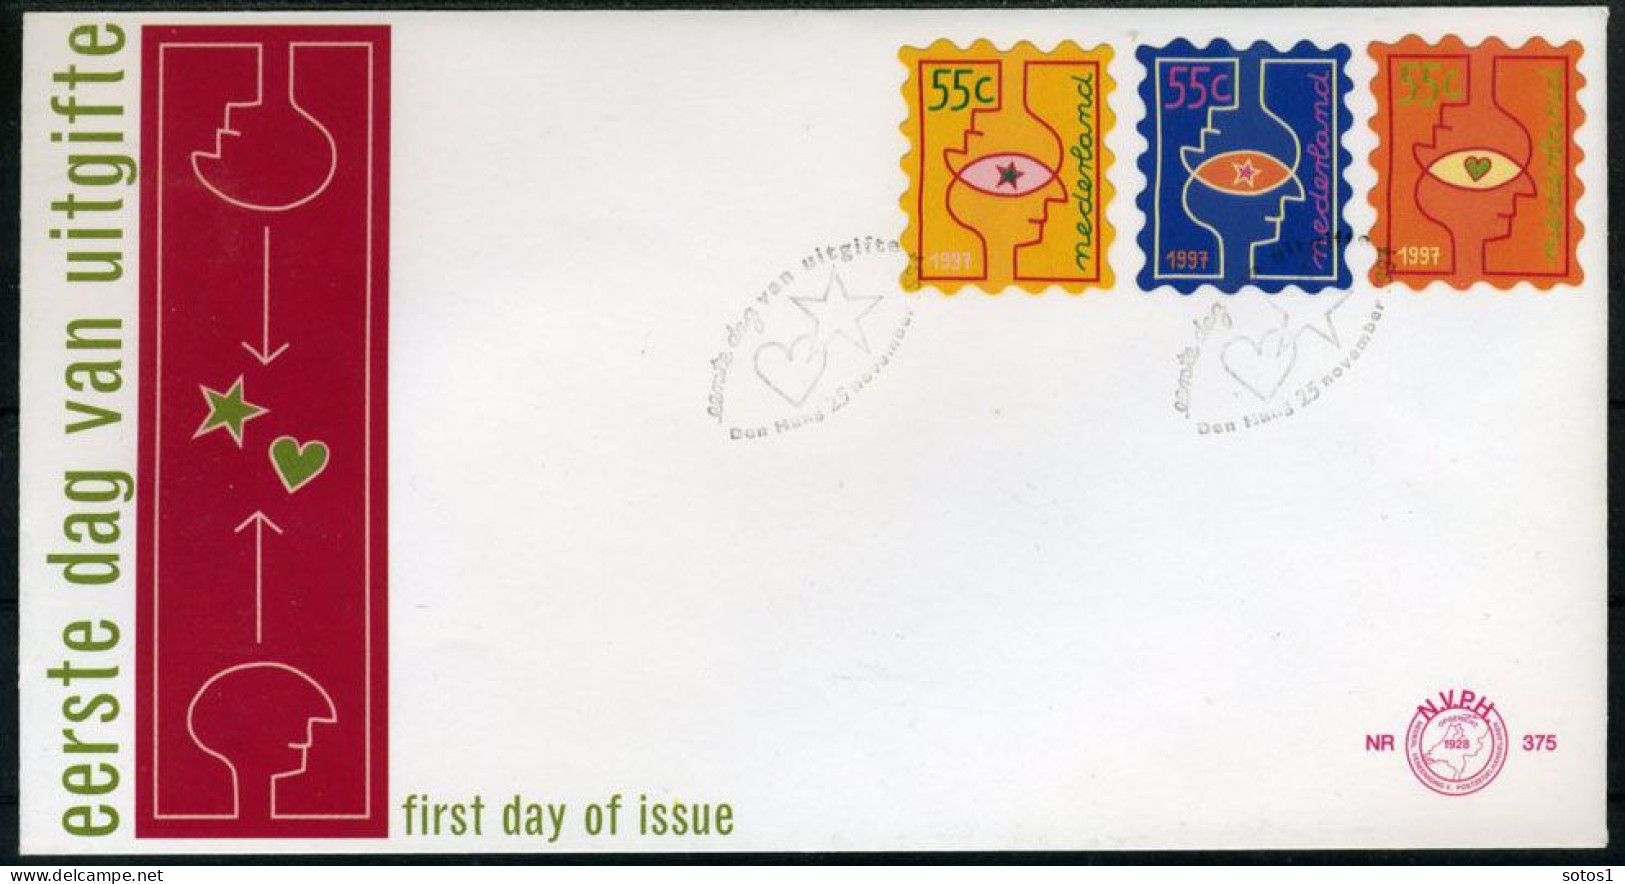 NEDERLAND E375 FDC 1997 - Decemberzegels (2 Stuks) - FDC